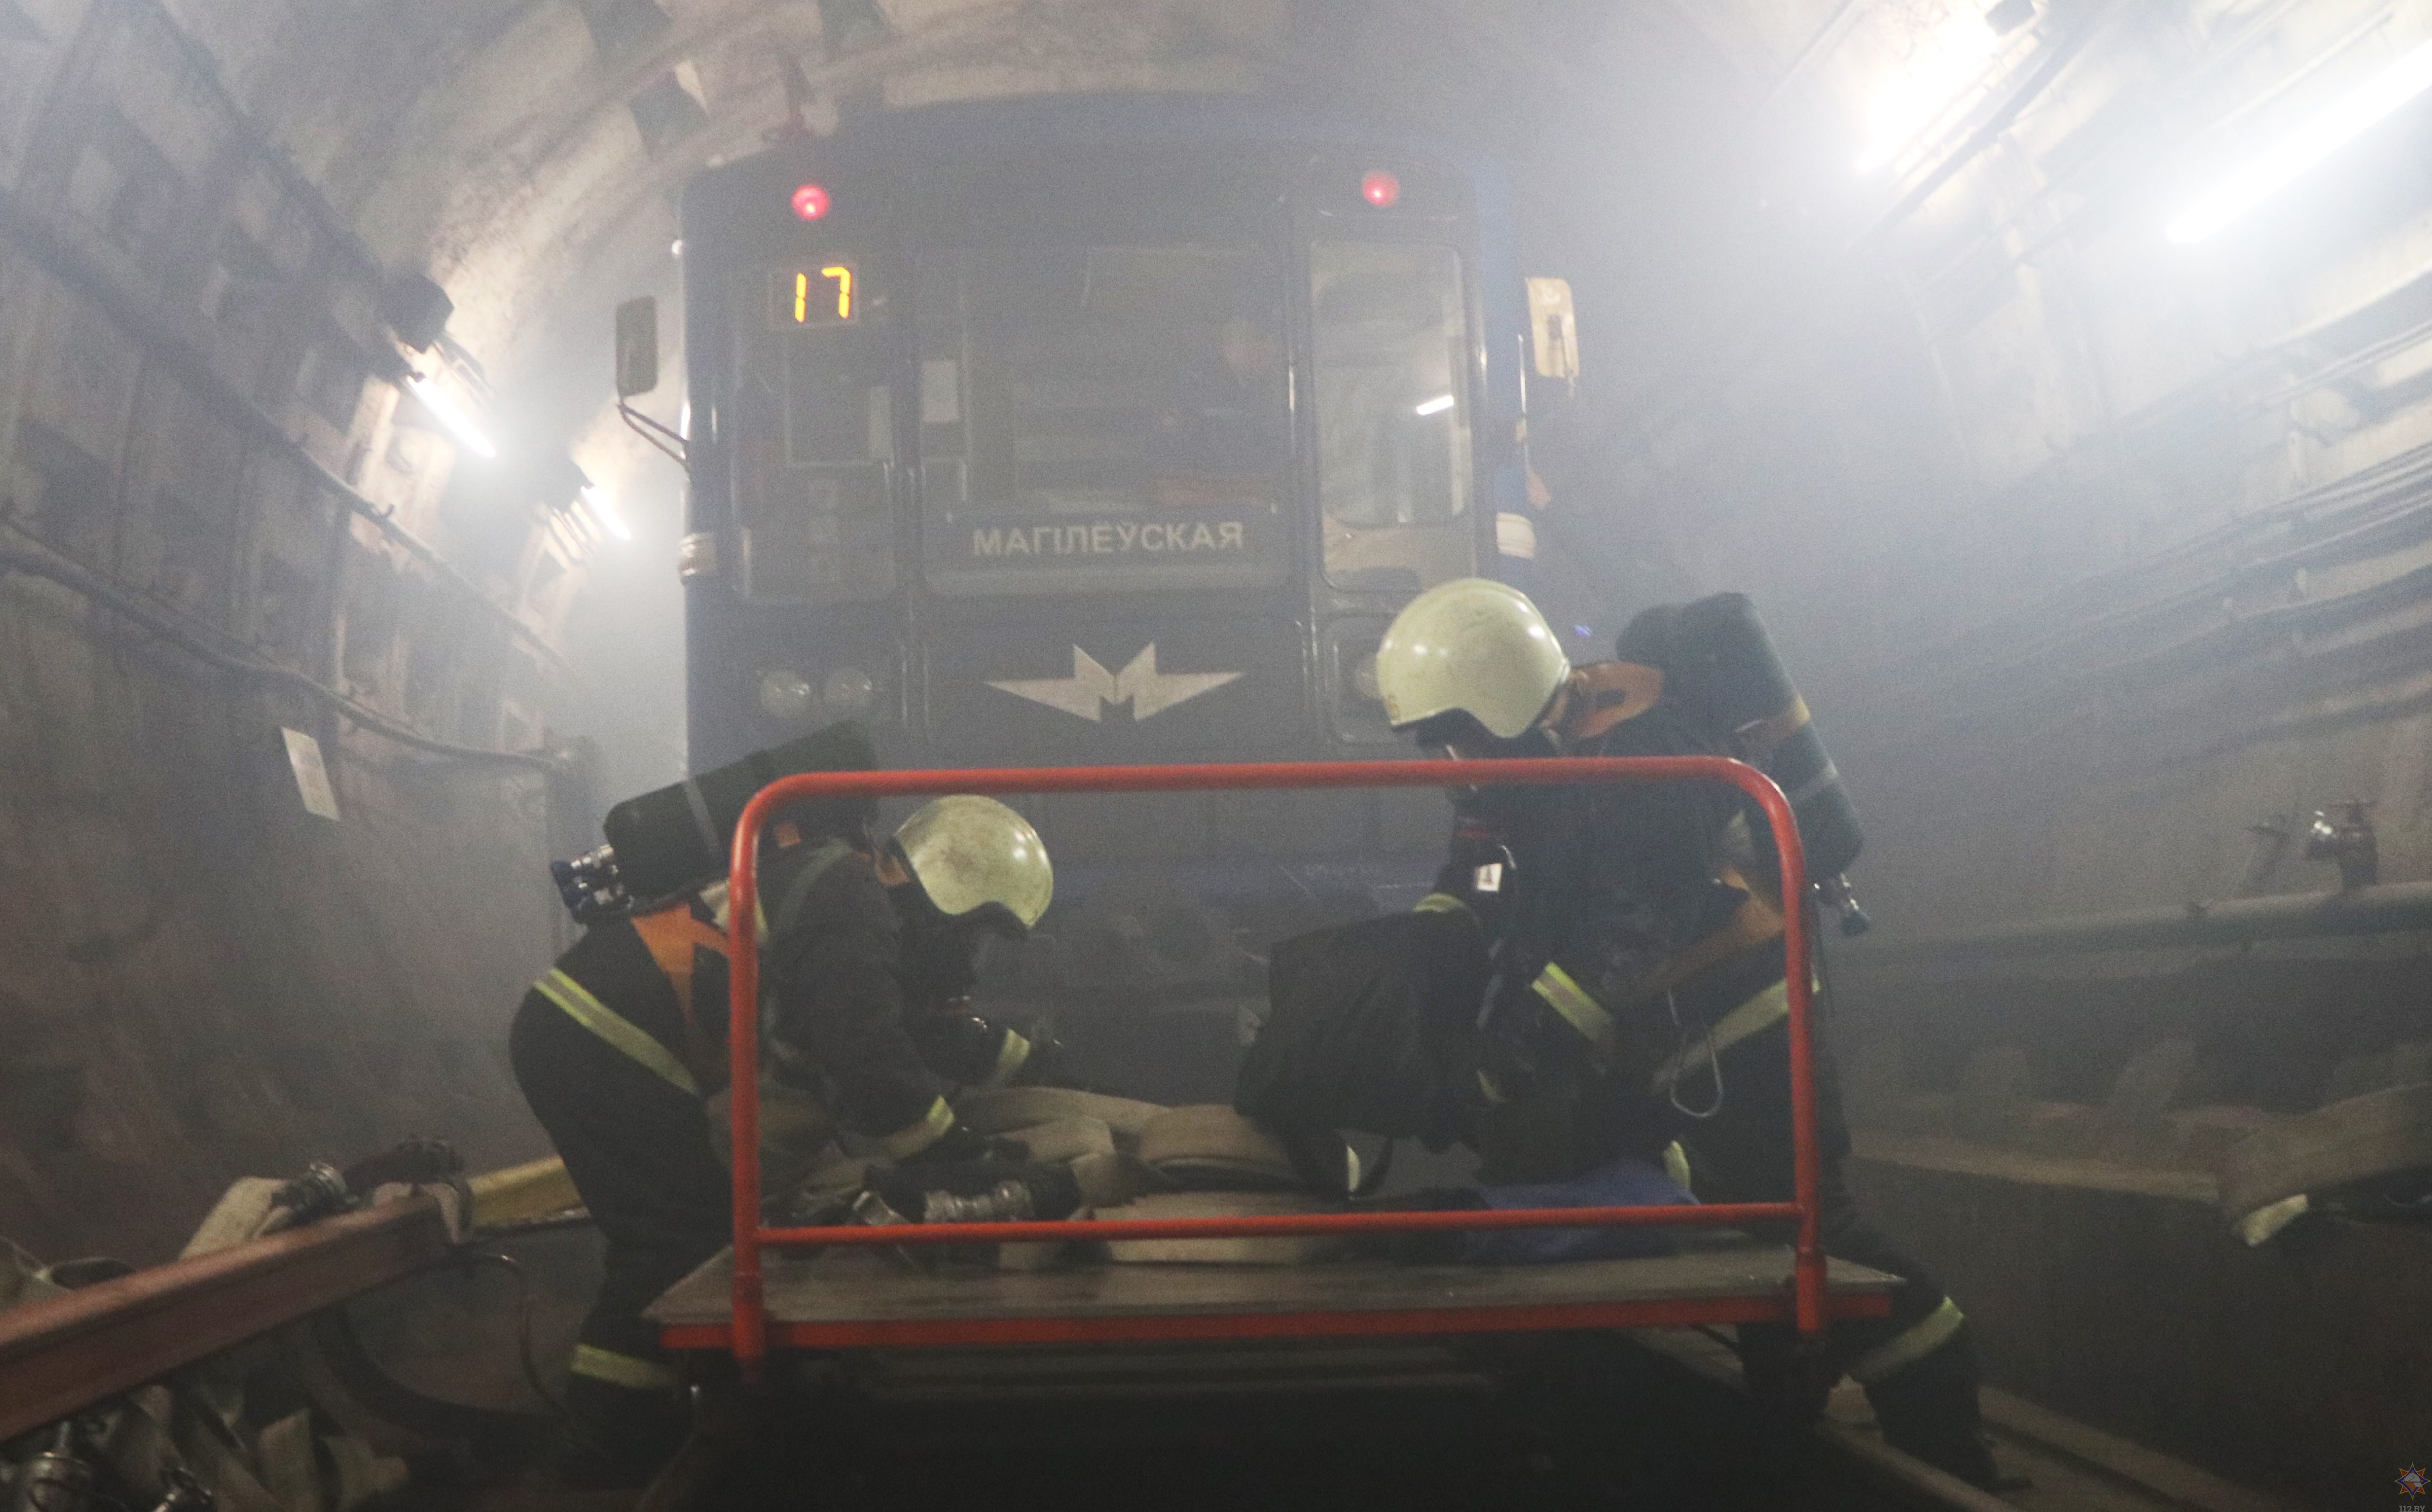 Столичные спасатели провели учения в метро: работники МЧС спасли трех человек, еще 50 пассажиров были эвакуированы